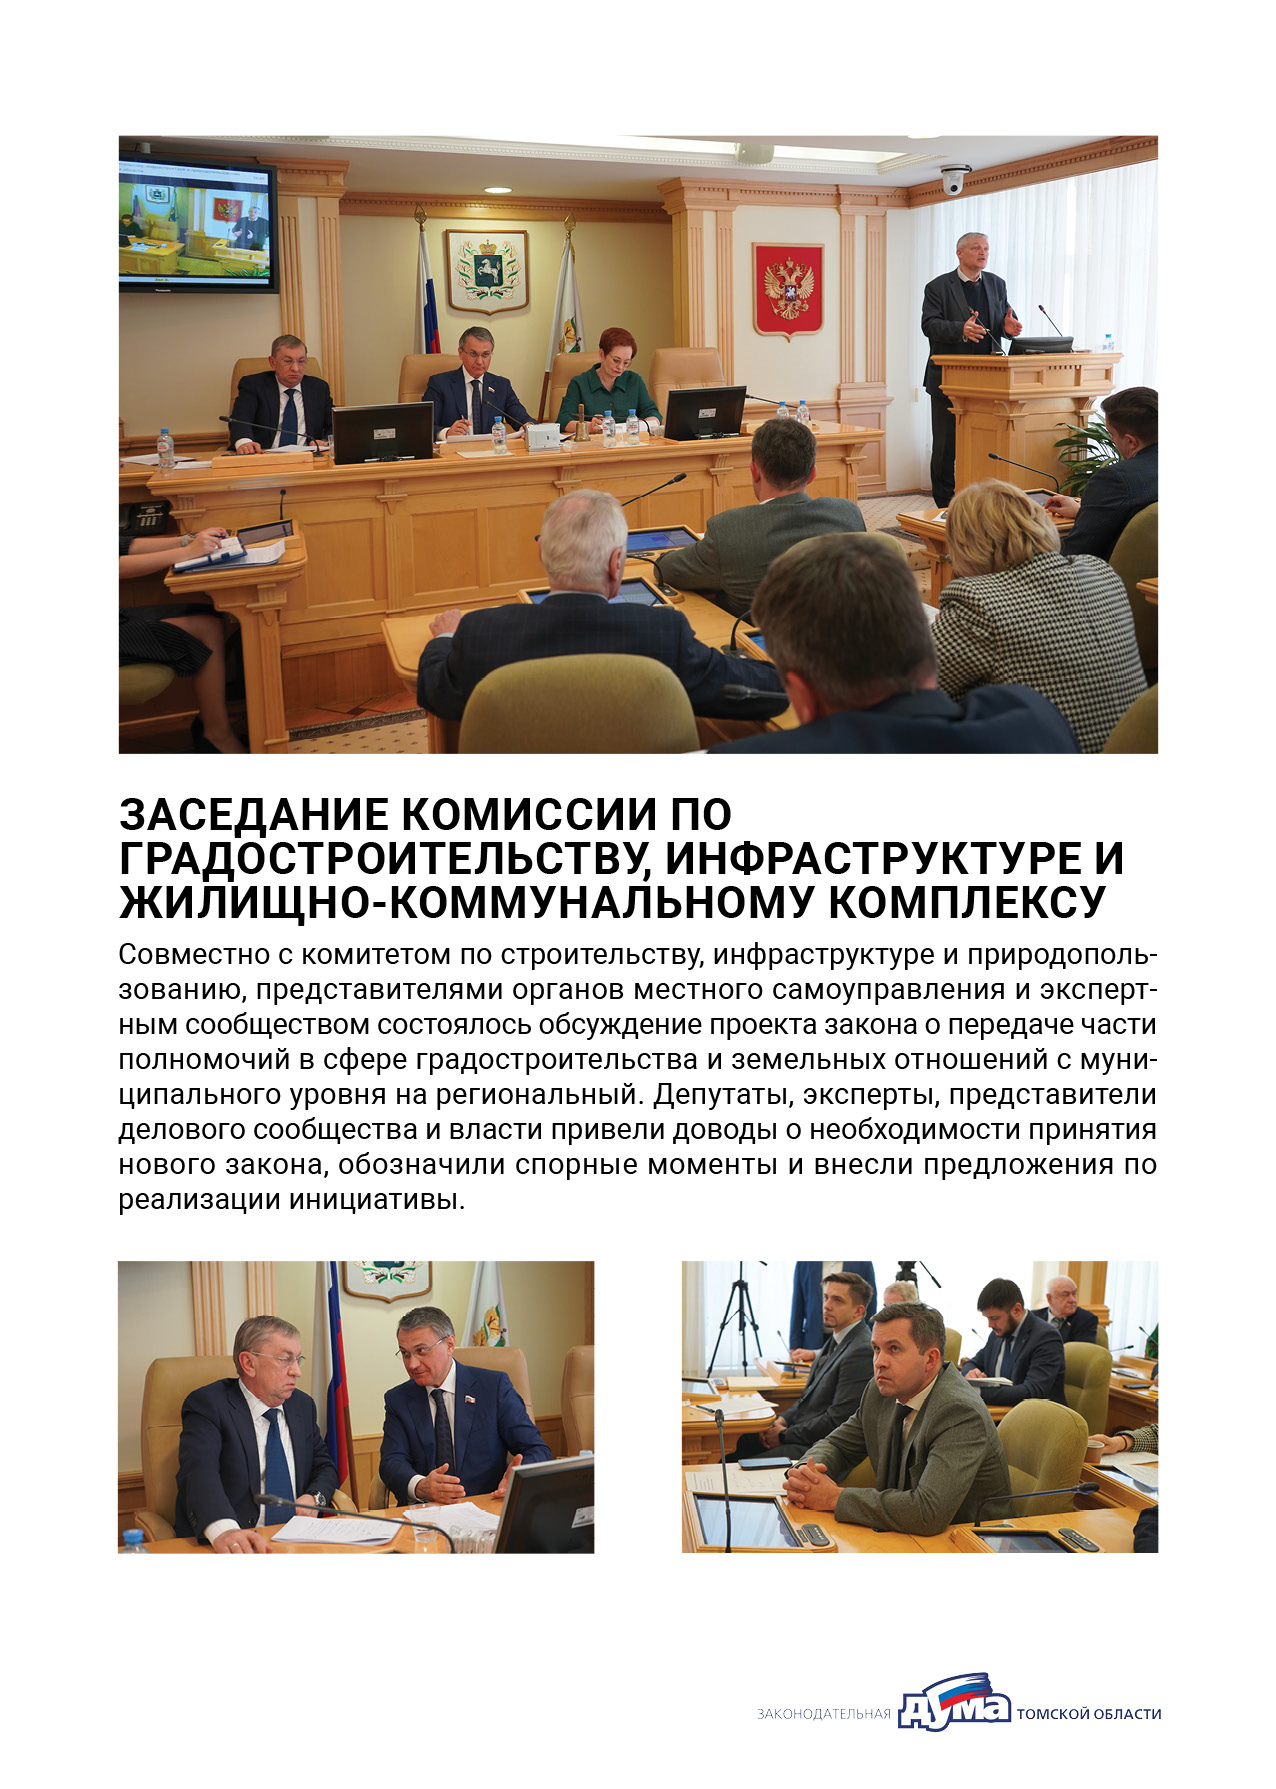 Отчет о работе депутата С.Б. Автомонова за II полугодие 2023 года